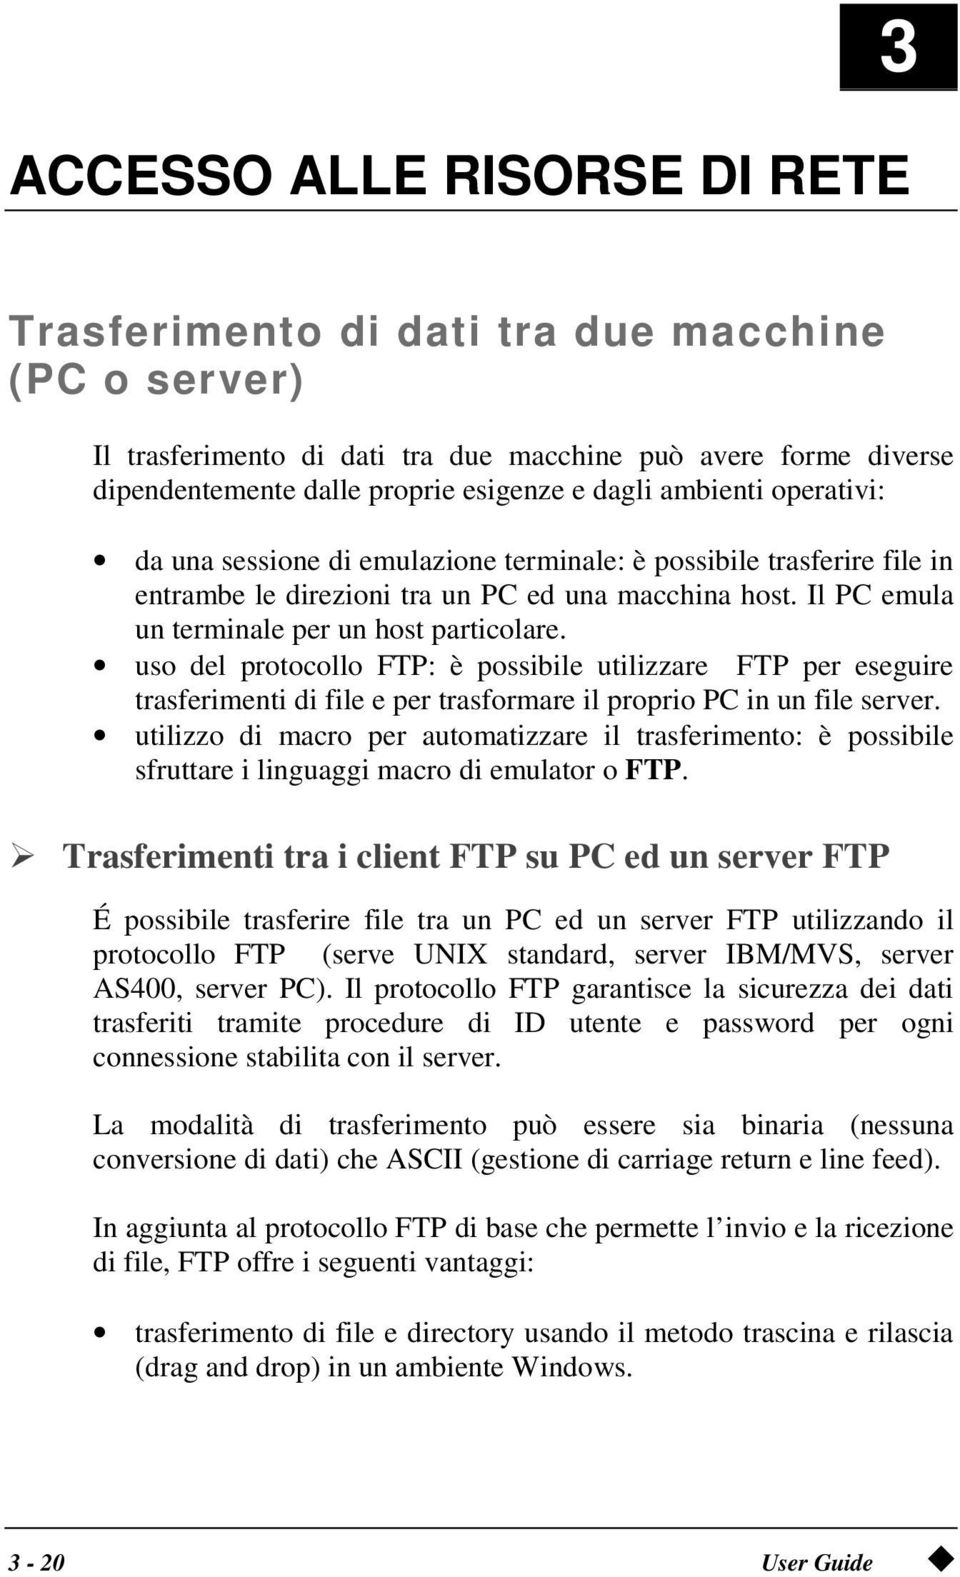 uso del protocollo FTP: è possibile utilizzare FTP per eseguire trasferimenti di file e per trasformare il proprio PC in un file server.